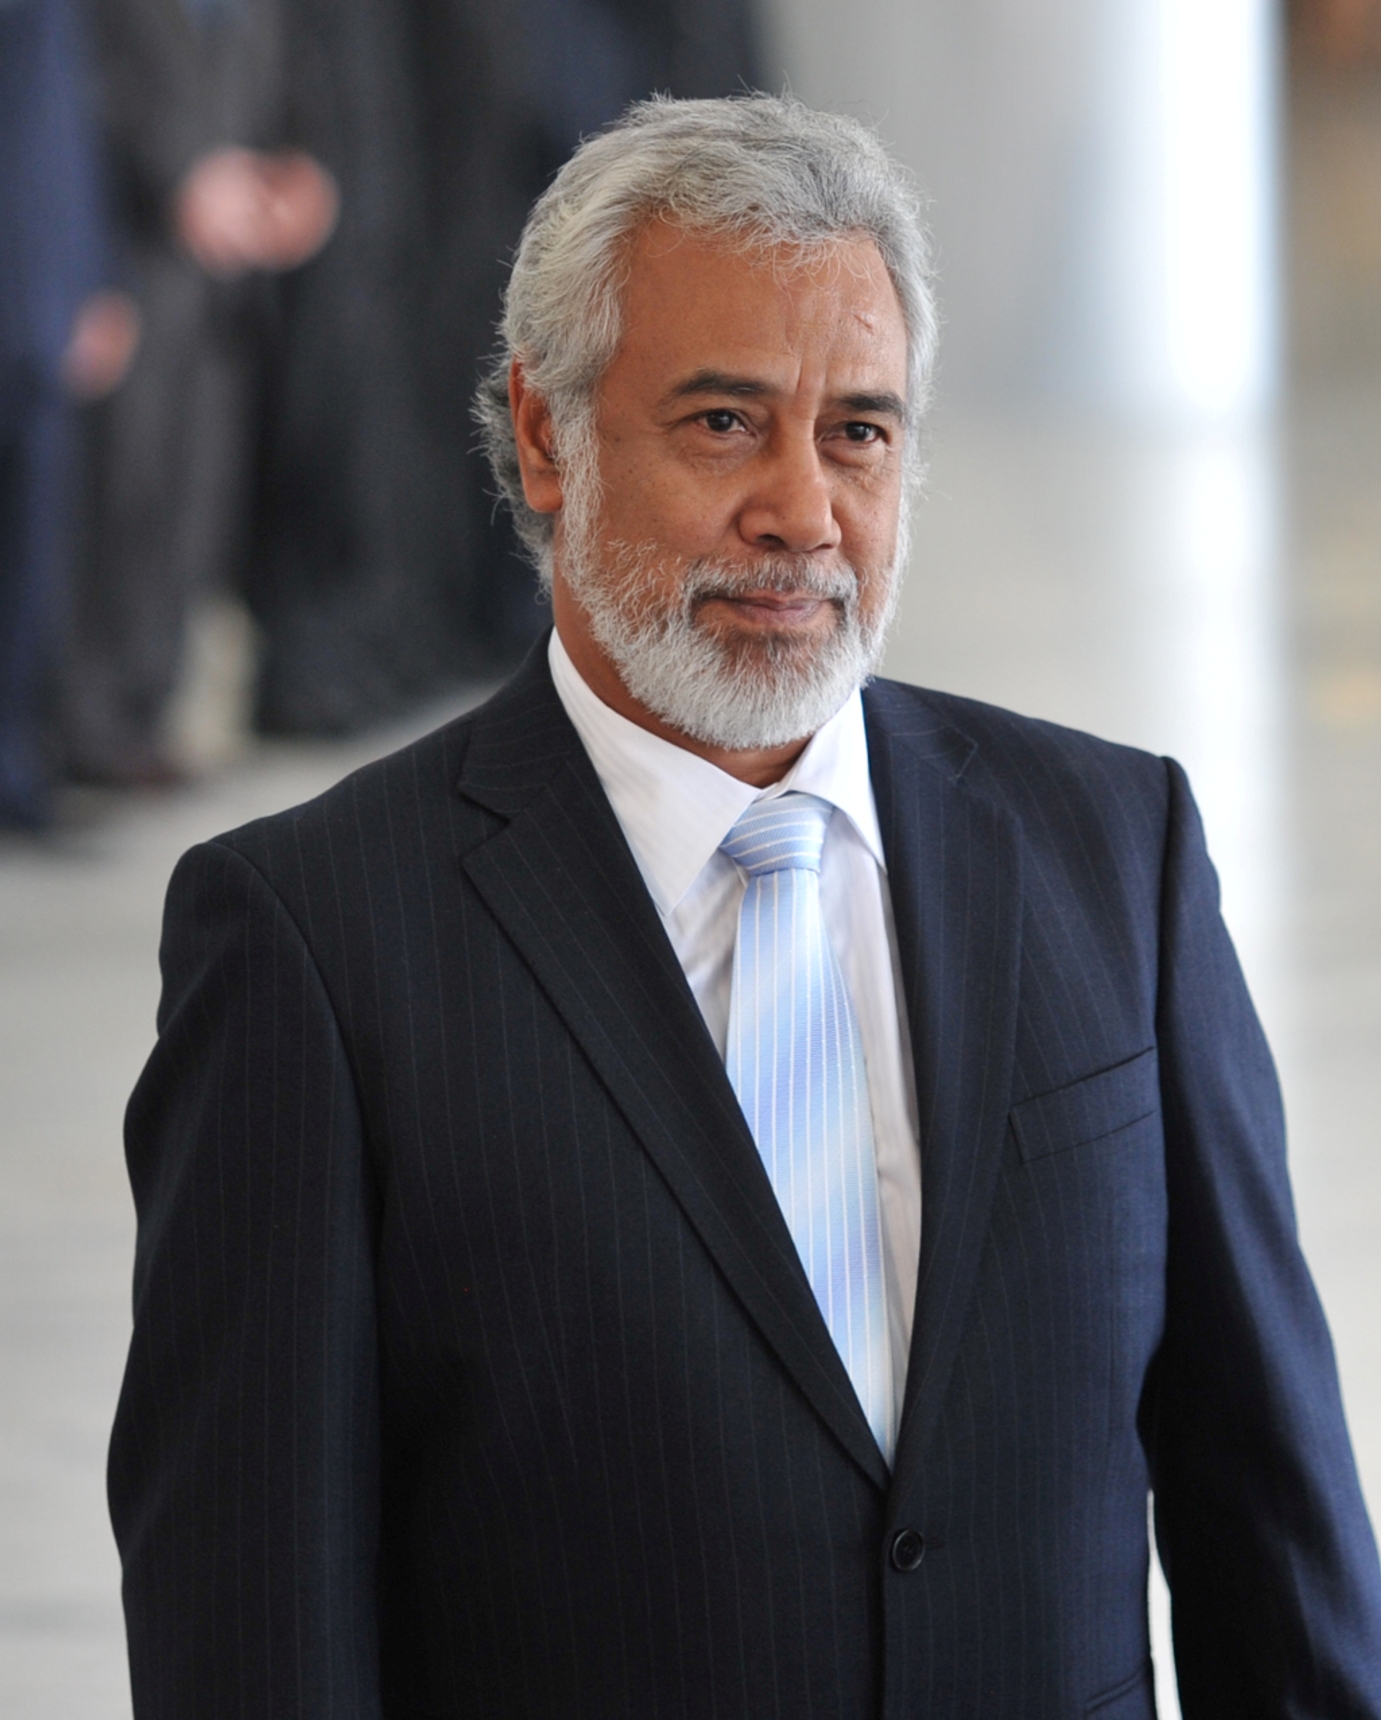  Xanana Gusmao, prime minister of East Timor